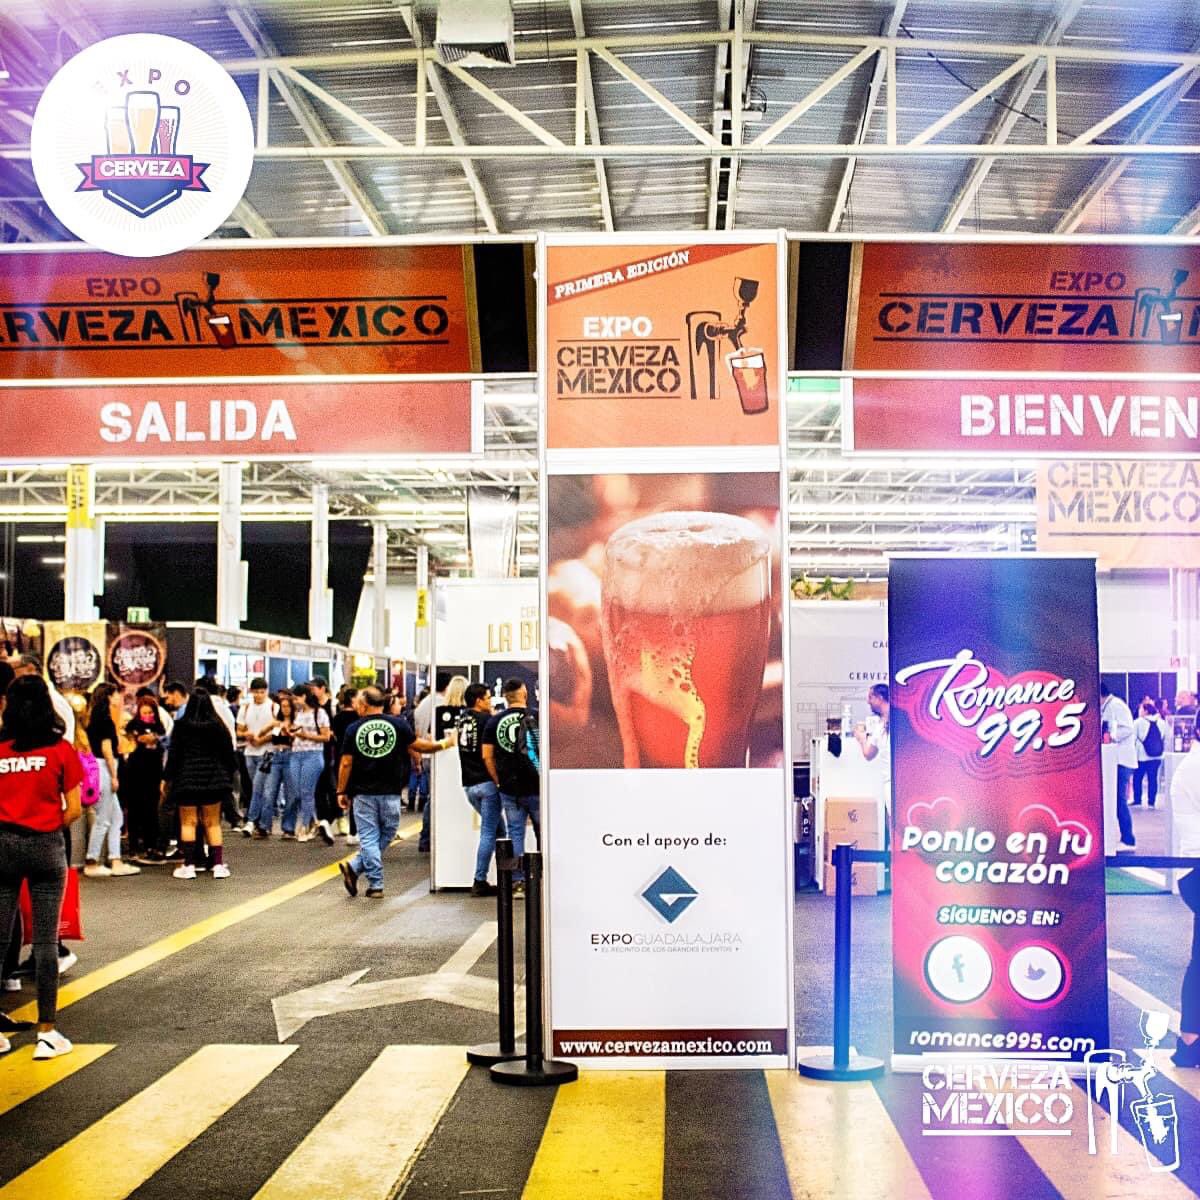 ¡Ya puedes adquirir tus boletos en línea y te llevas el vaso de regalo! Click aquí: …o-cerveza-360-guadalajara.boletia.com #ExpoCervezaGuadalajara 12 y 13 de mayo en Expo Guadalajara